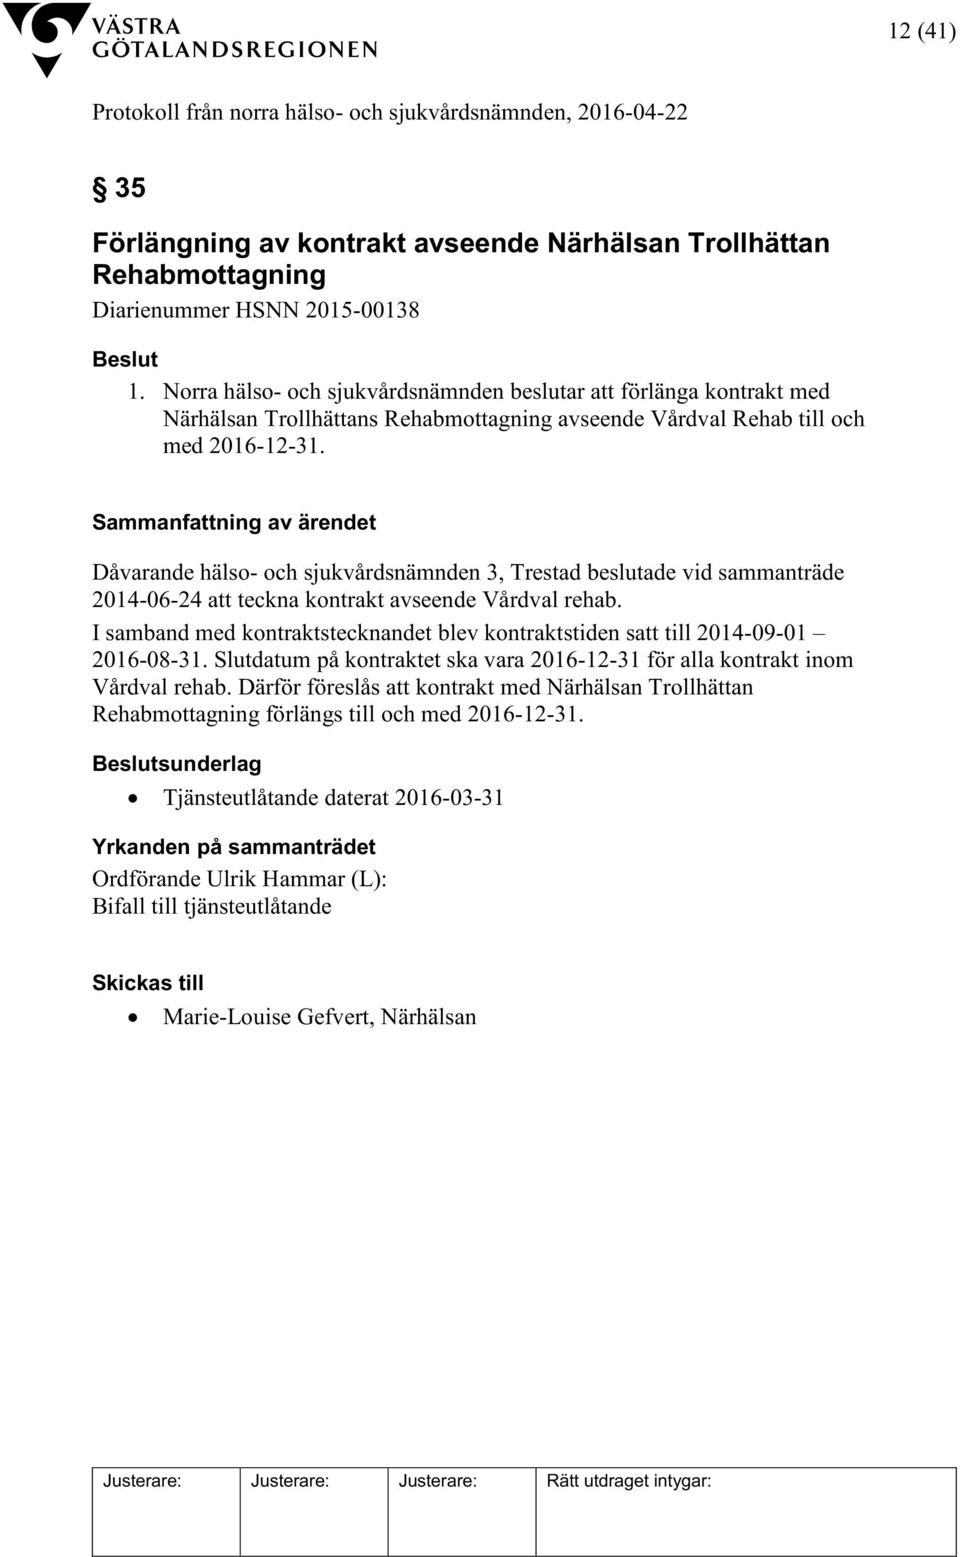 Dåvarande hälso- och sjukvårdsnämnden 3, Trestad beslutade vid sammanträde 2014-06-24 att teckna kontrakt avseende Vårdval rehab.